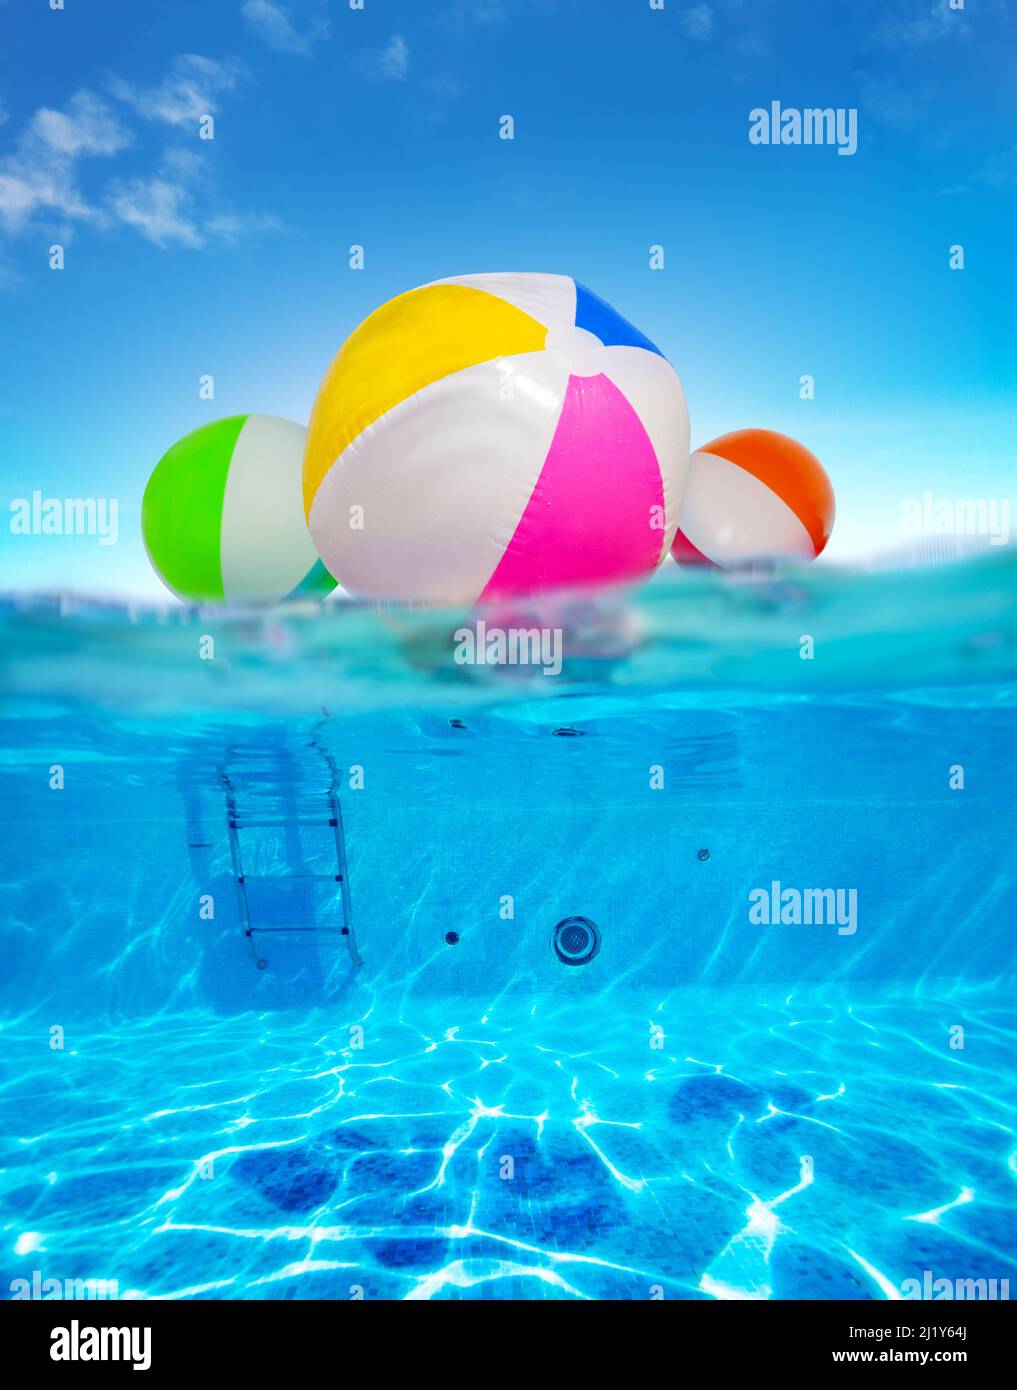 Ballons gonflables flottent dans l'eau, image de la piscine sous-marine divisée Banque D'Images